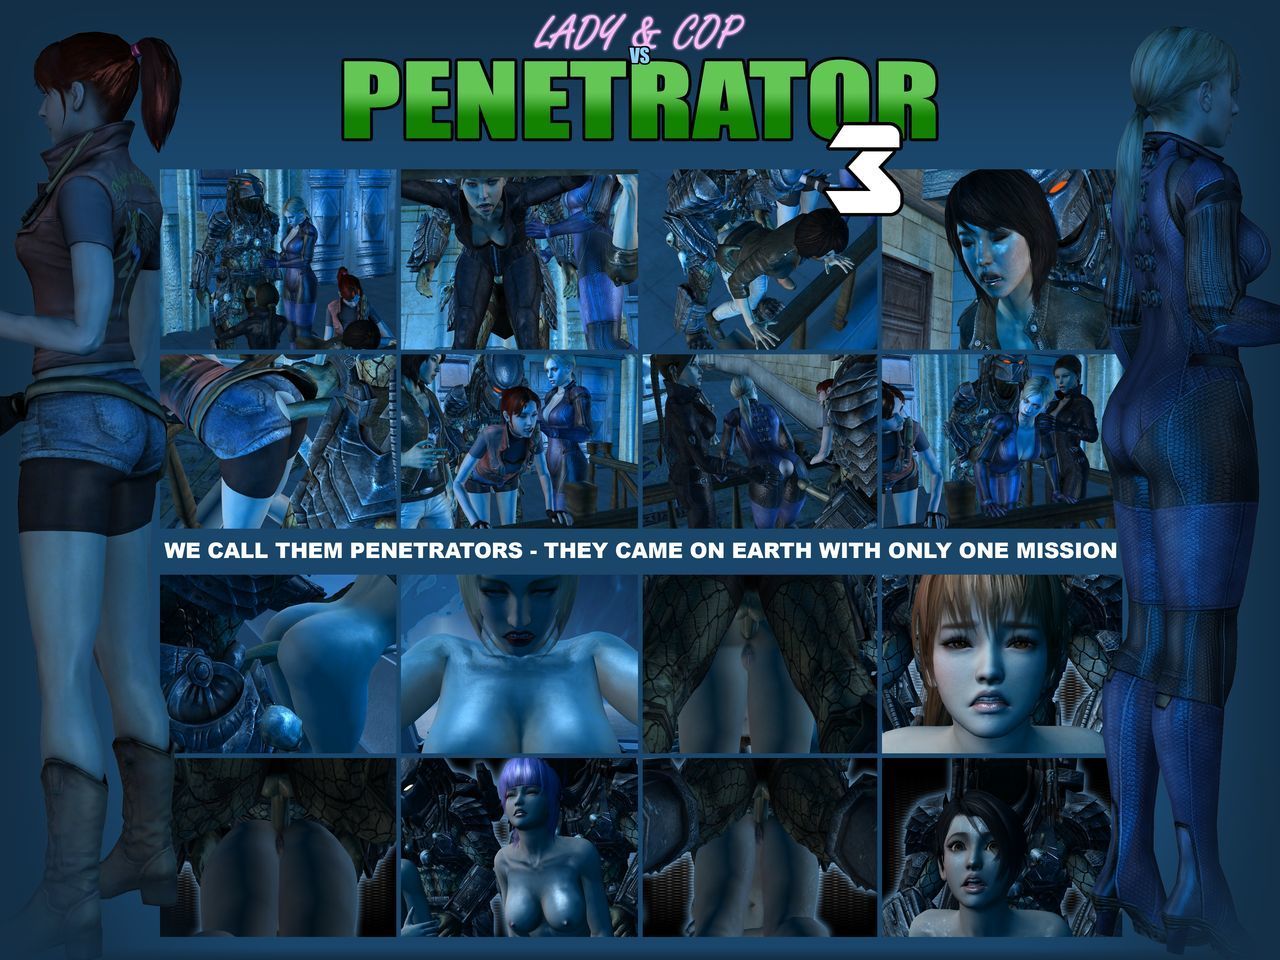 ท่านหญิง & ตำรวจ กับ penetrator 3 (preview)